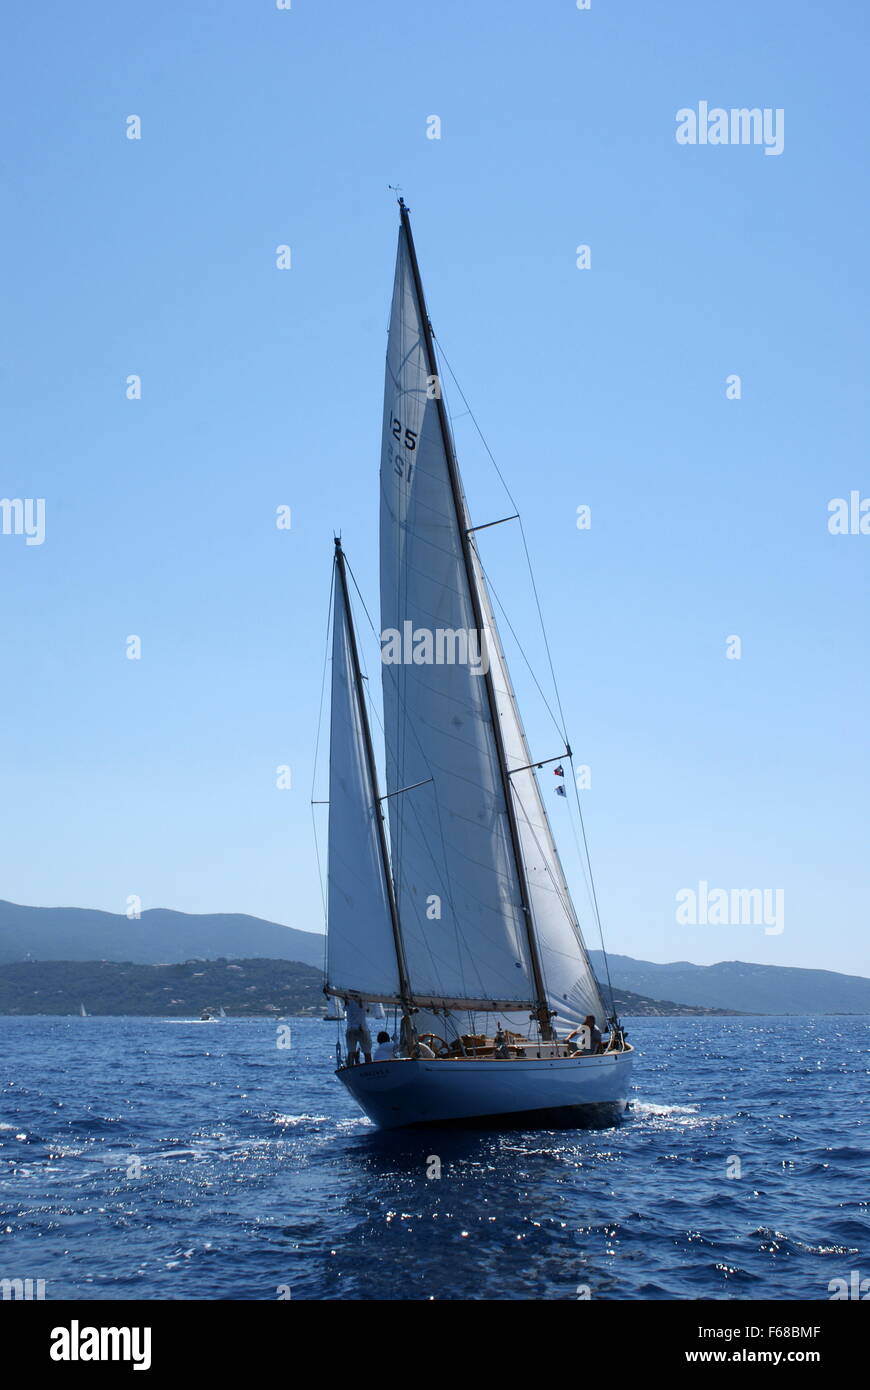 Corsica Classic yacht race, Porto Pollo, Corsica Stock Photo